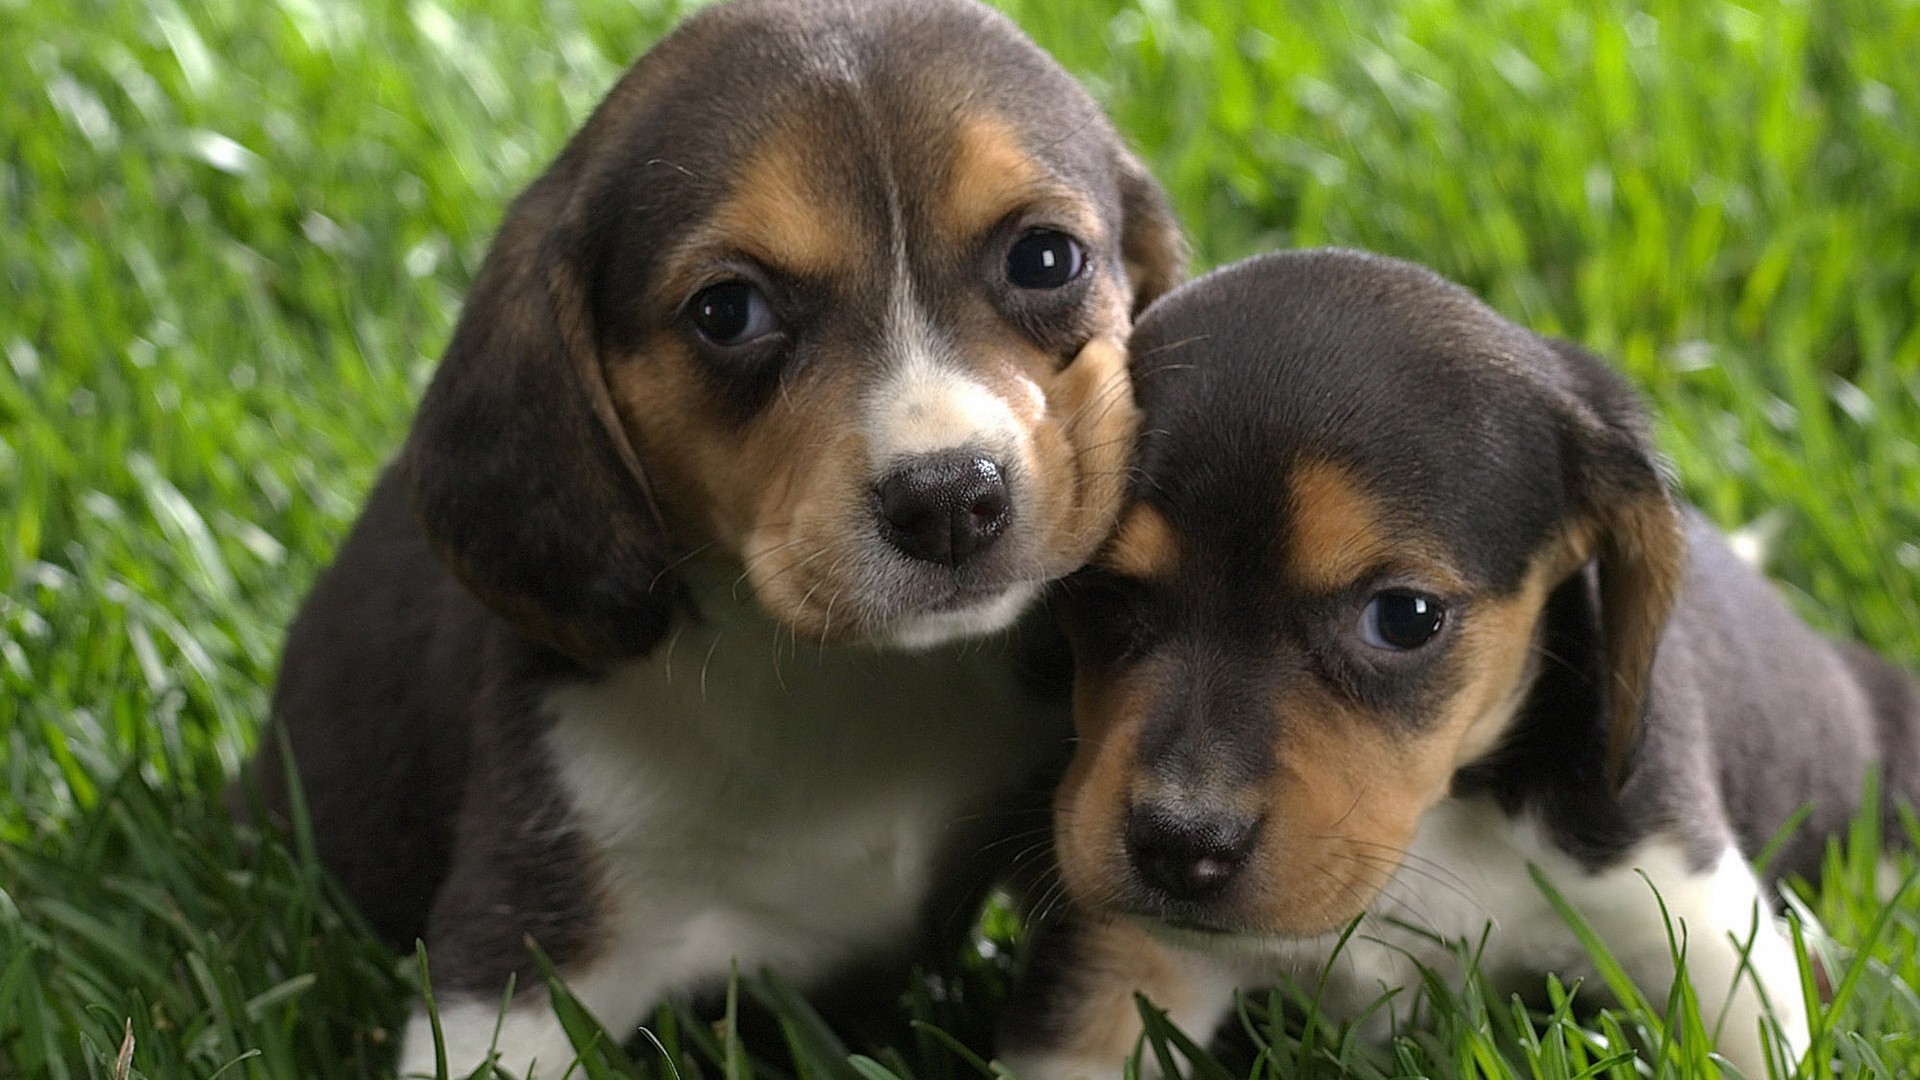 General 1920x1080 puppies Beagles dog baby animals animals mammals